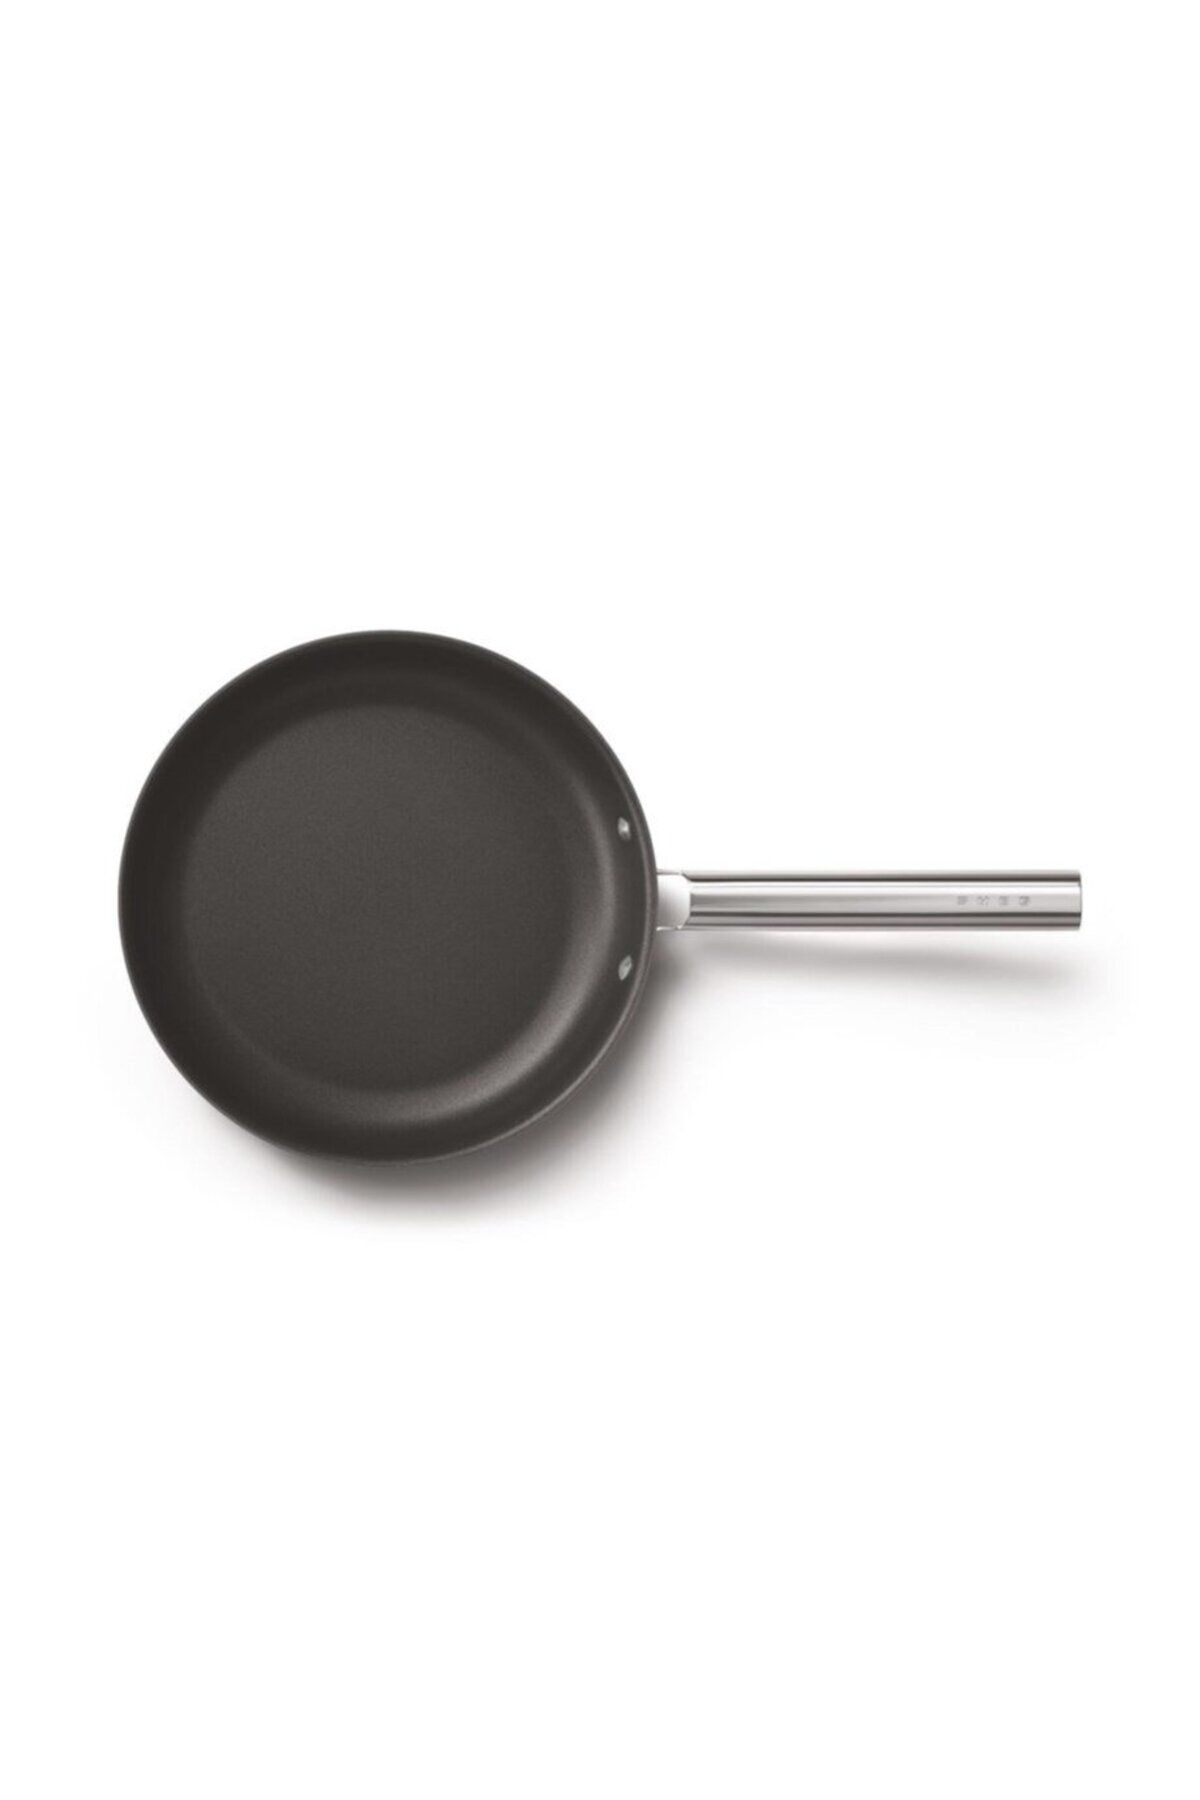 Smeg Cookware 50's Style Siyah Tava 28 Cm